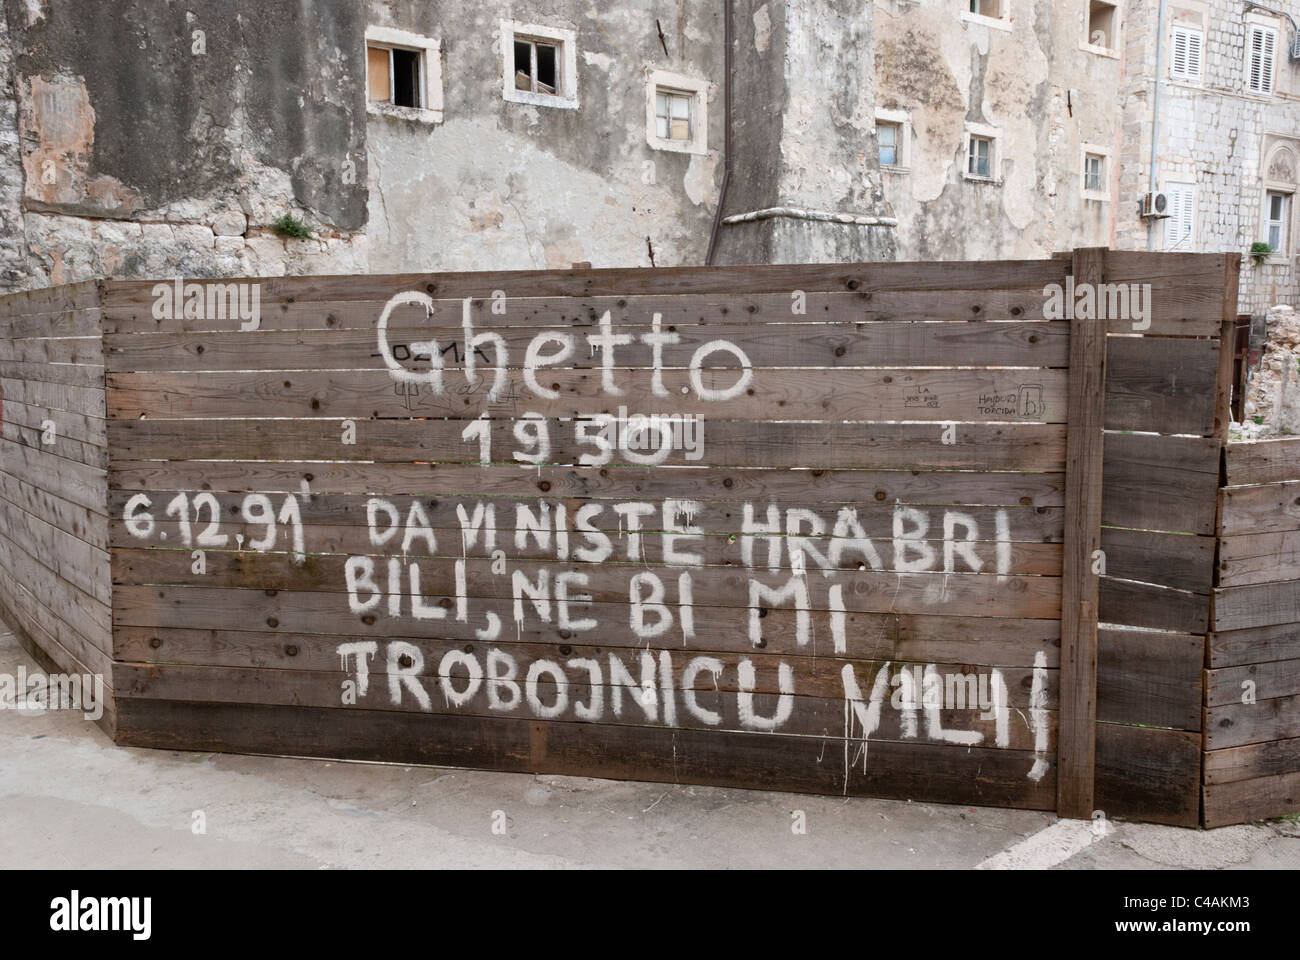 Graffiti dans un quartier délabré de la vieille ville de Dubrovnik, Croatie. Banque D'Images